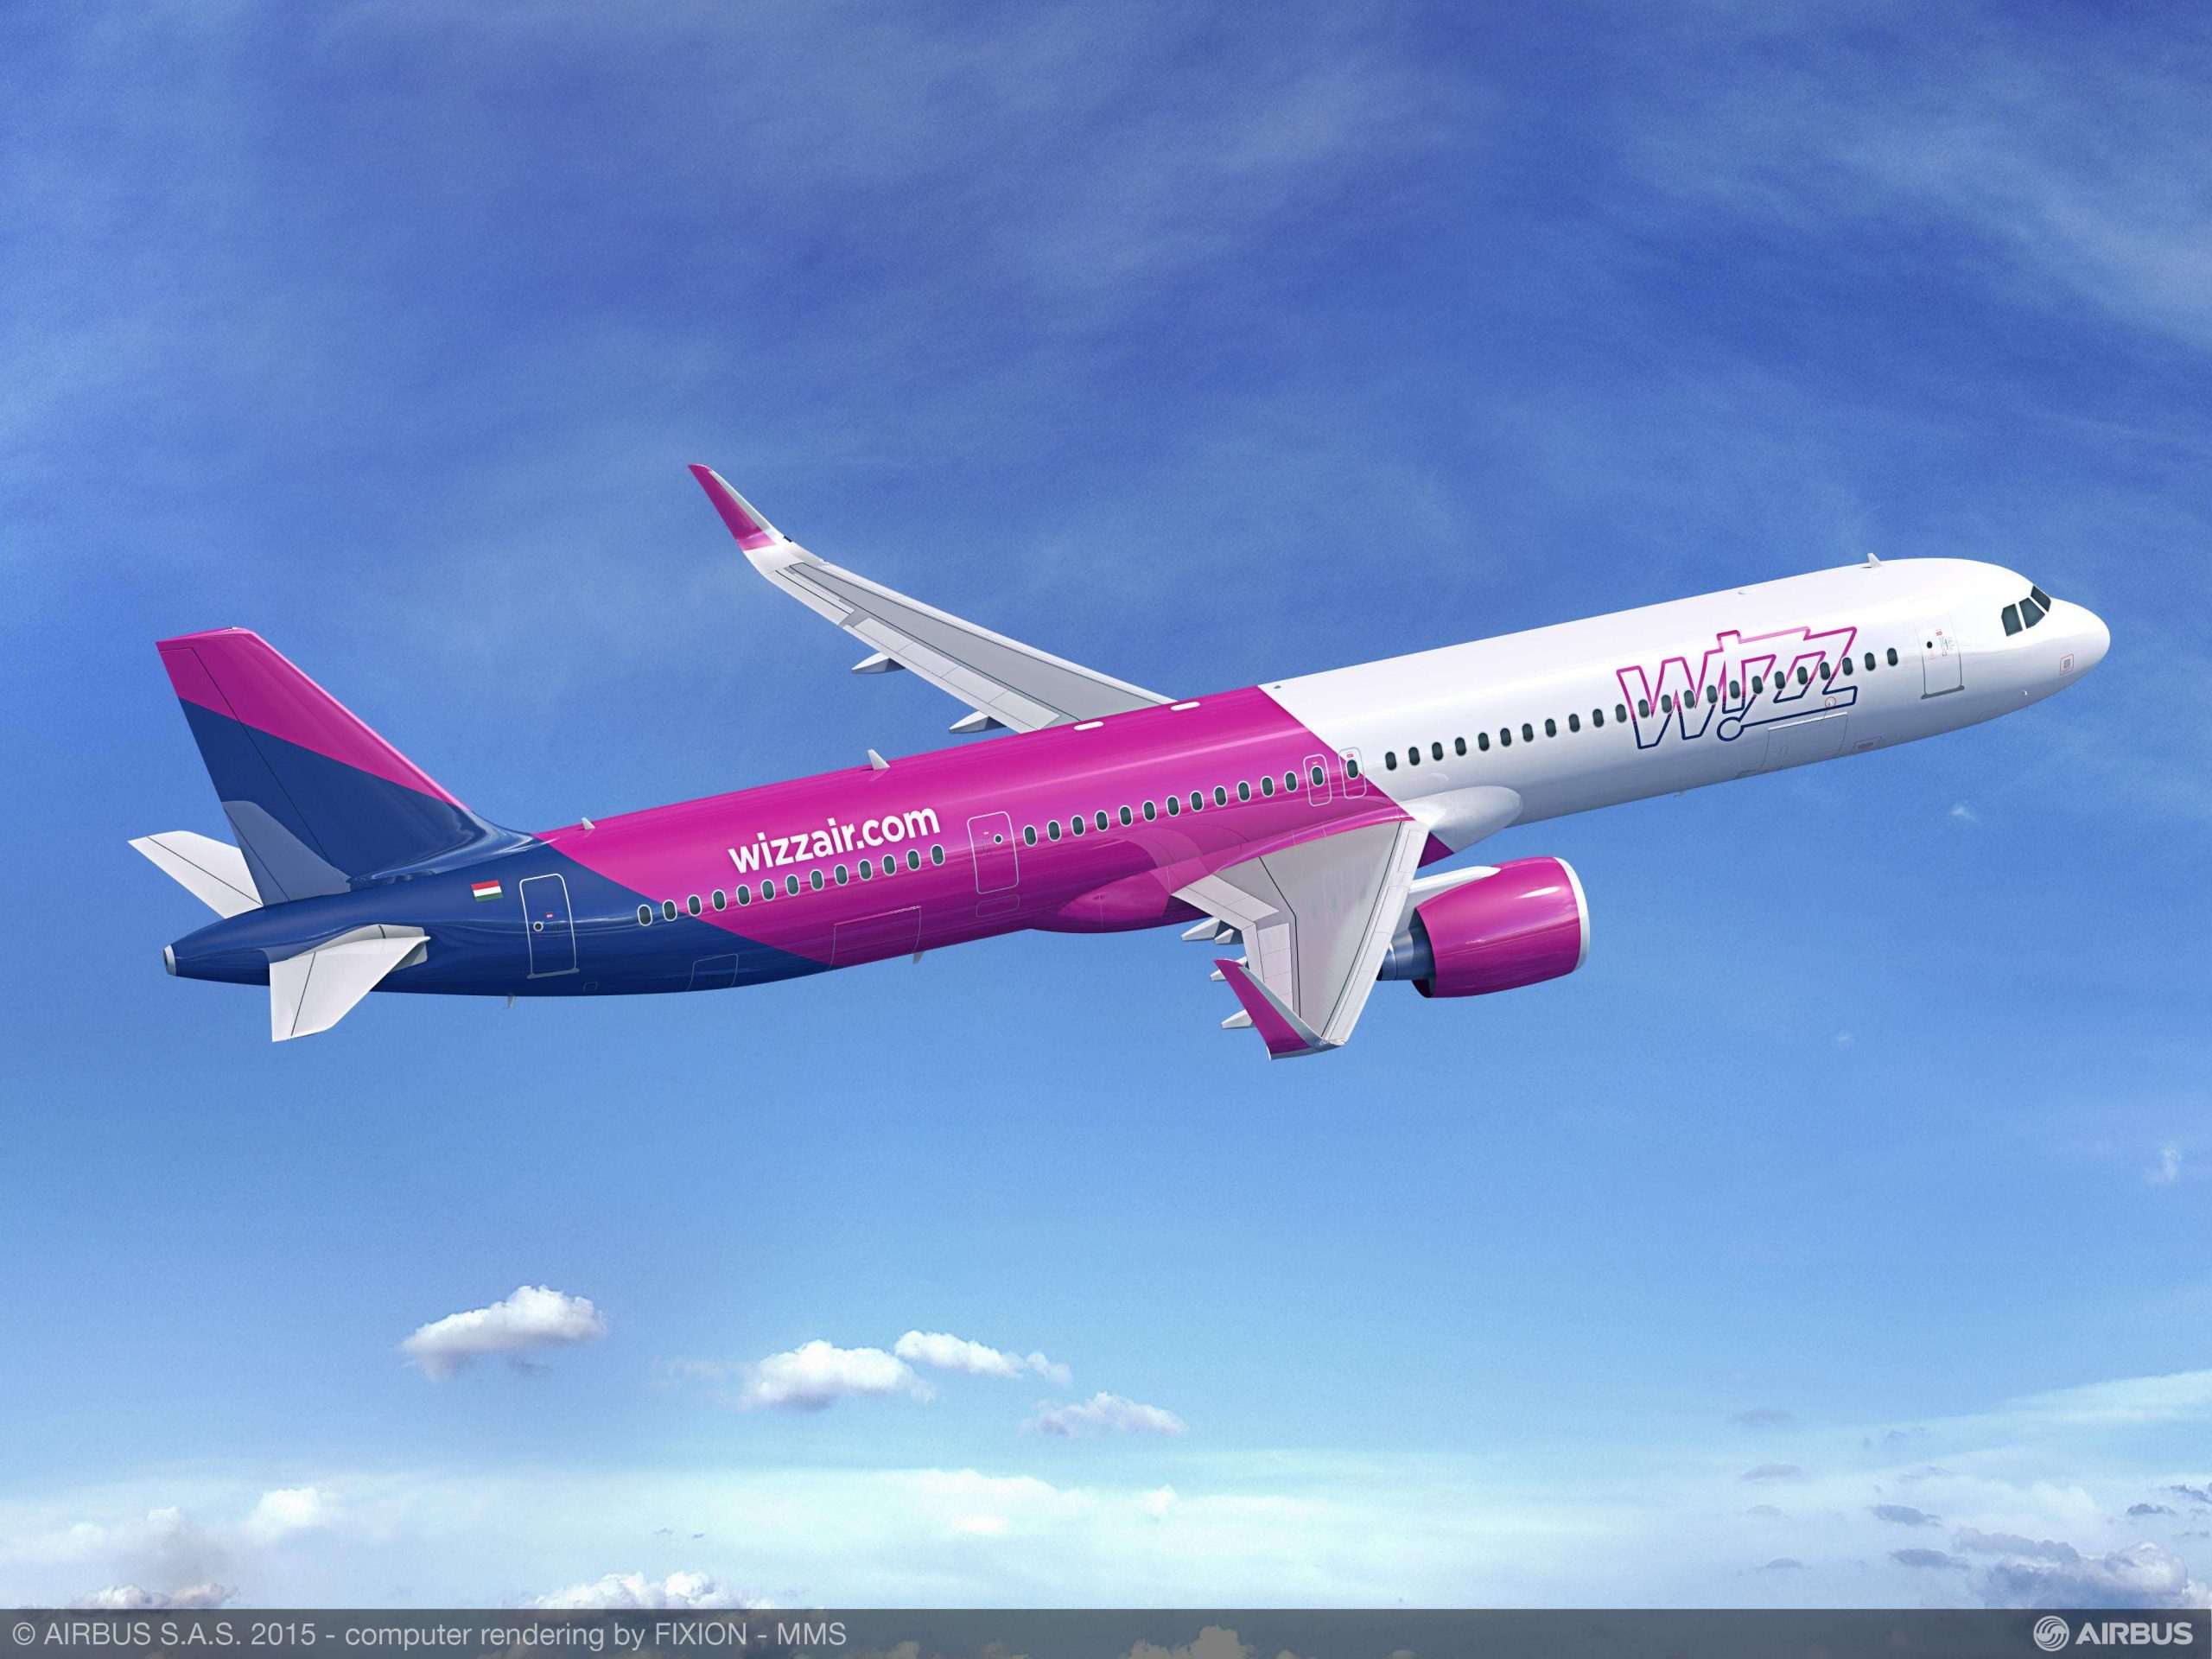 Wizz Air encarga otros 75 aviones de la familia A321neo